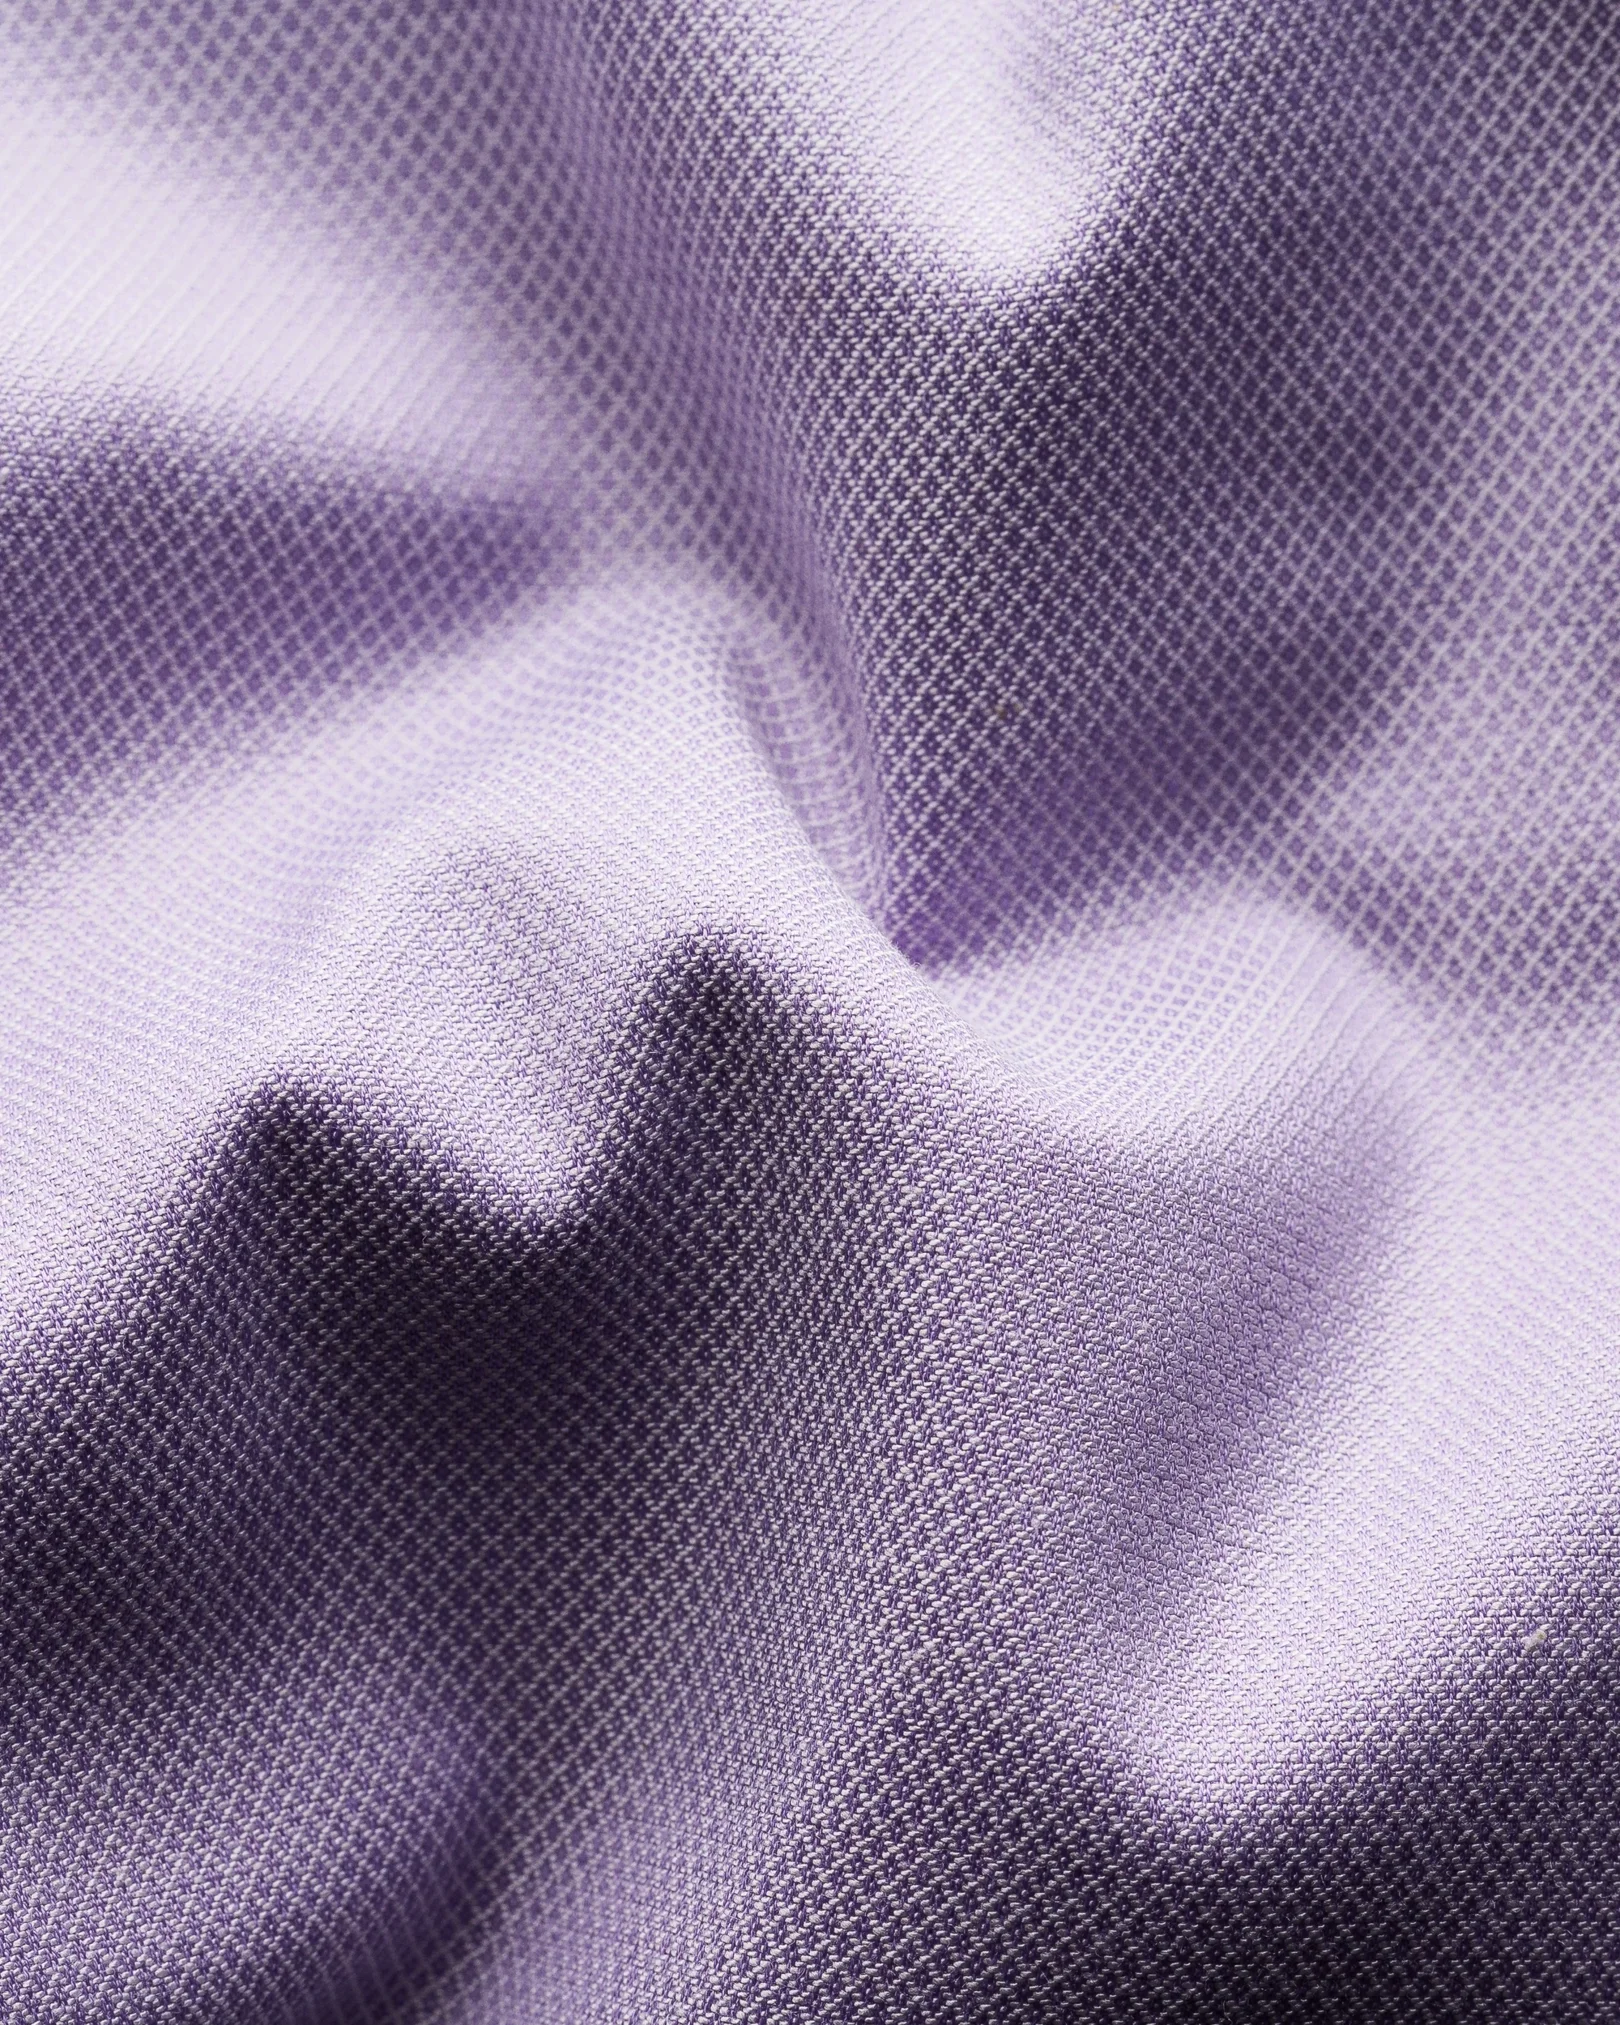 Eton - purple cotton lyocell stretch shirt